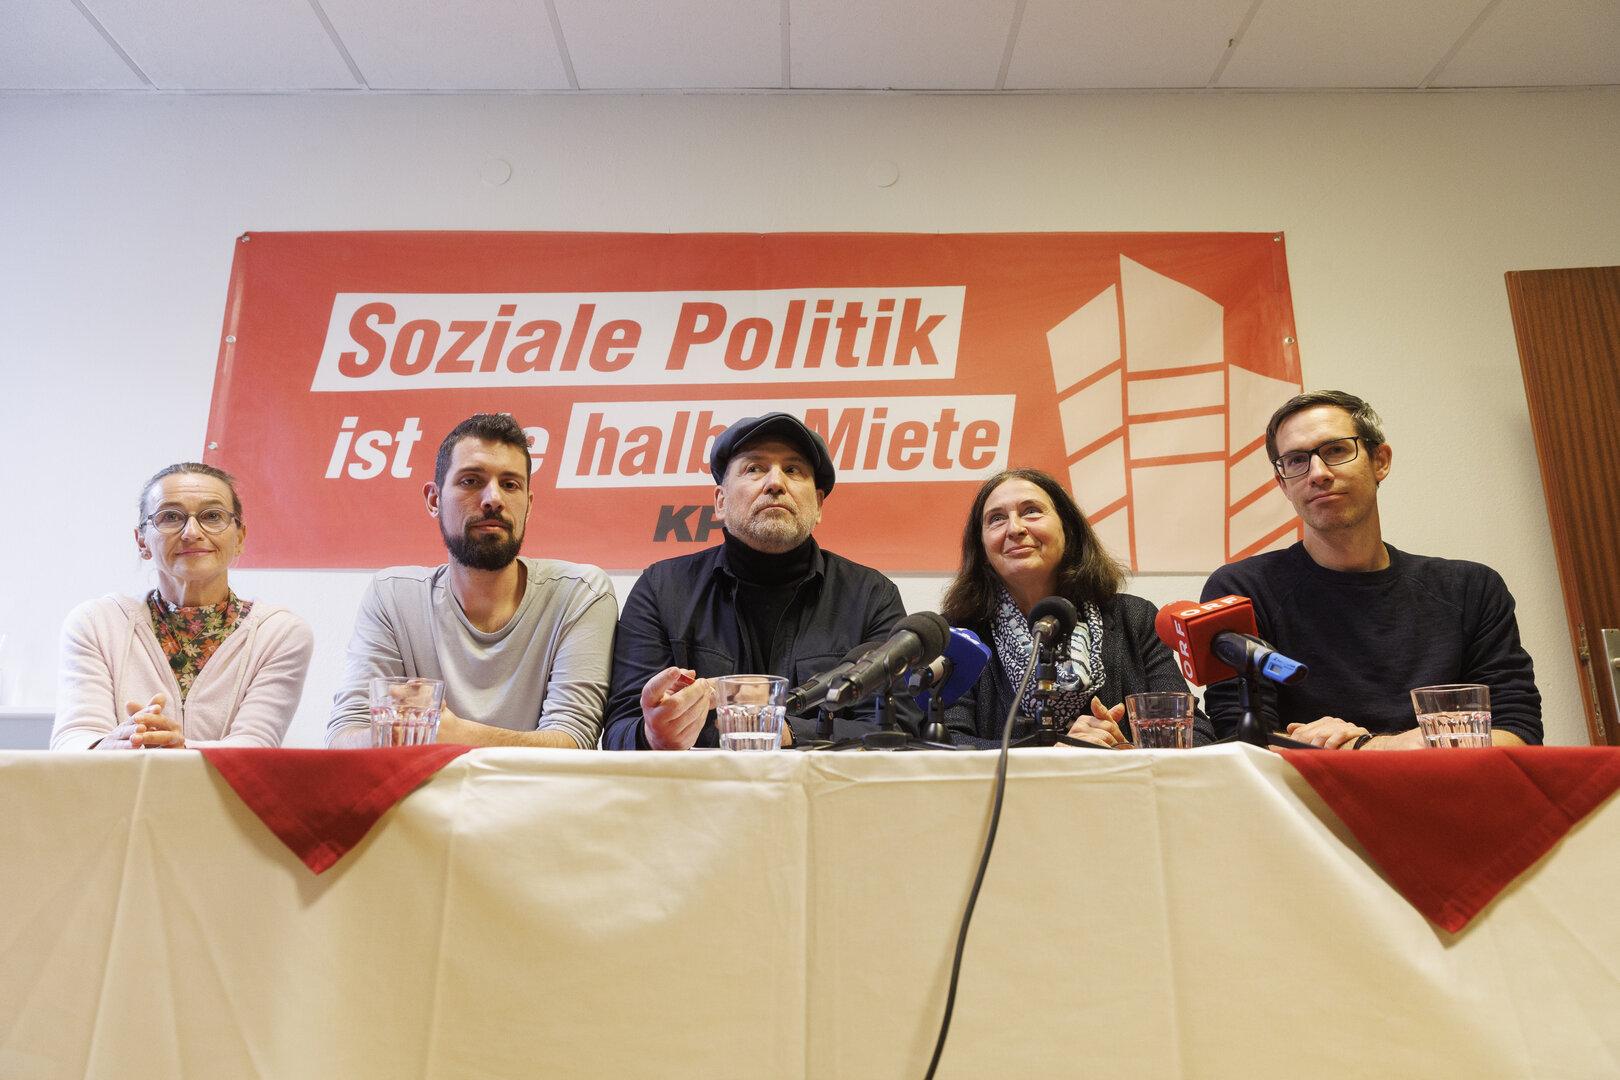 Nach Salzburg-Erfolg: KPÖ peilt Einzug in den Nationalrat an